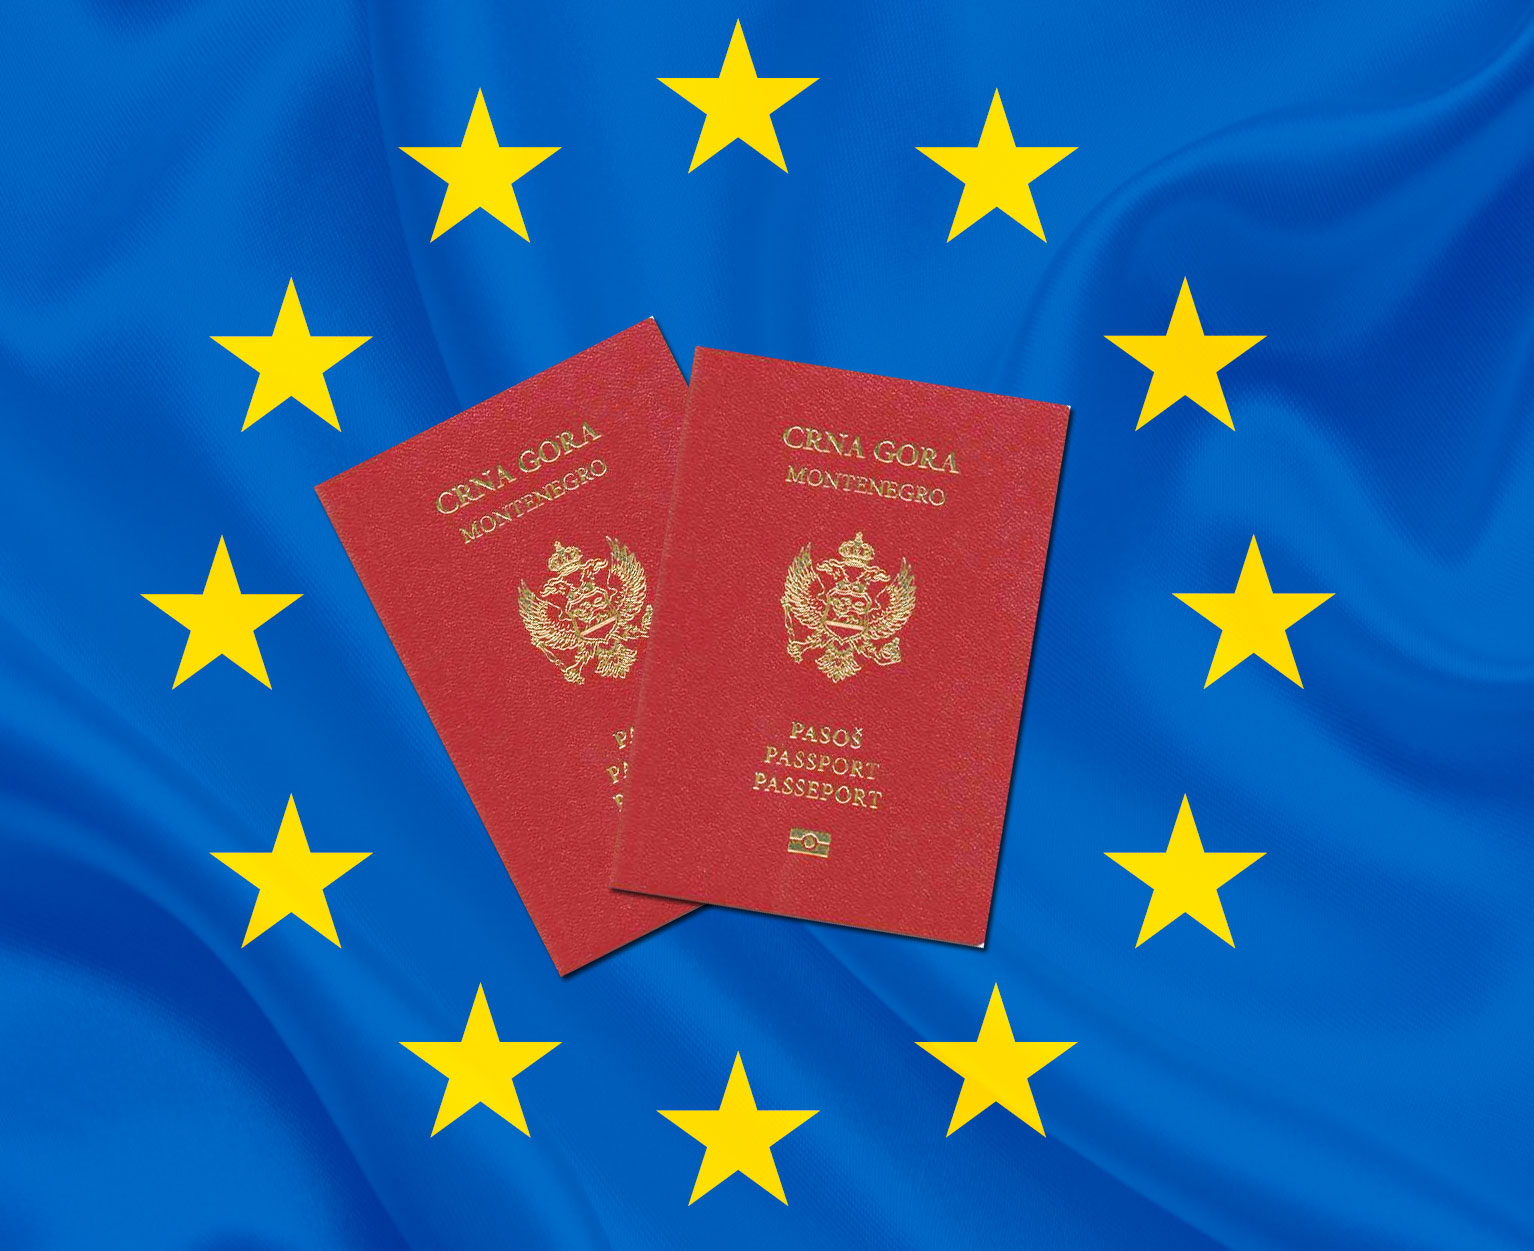 Zamke ekonomskog državljanstva: Kako prepoznati bogate kriminalce koji mogu kupiti crnogorski pasoš?